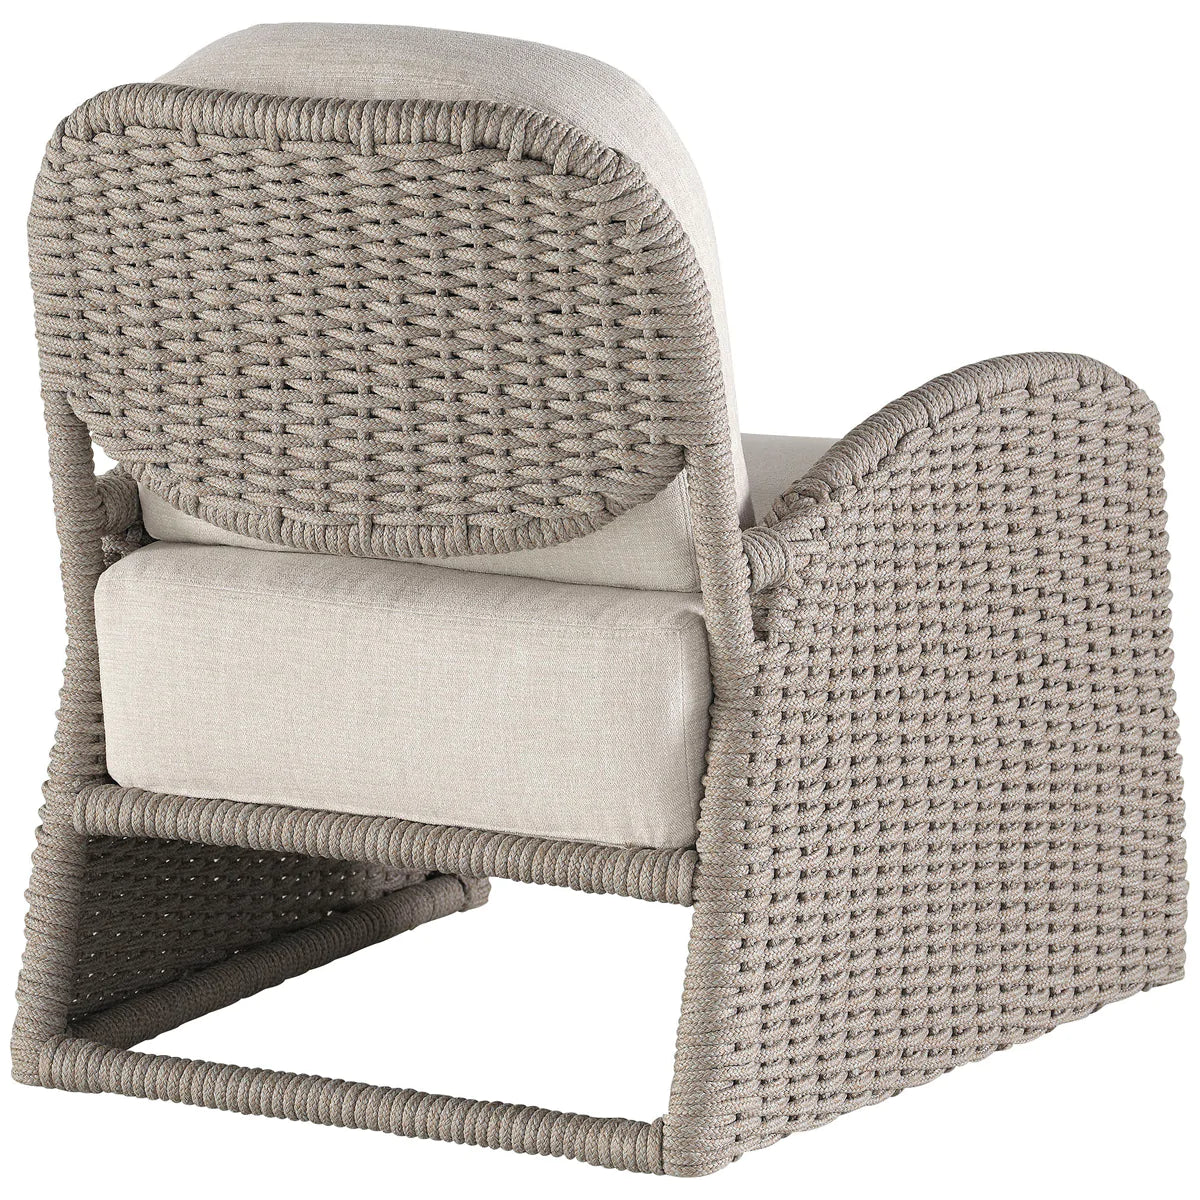 Baker Furniture Cuerda Lounge Chair MCO3212C